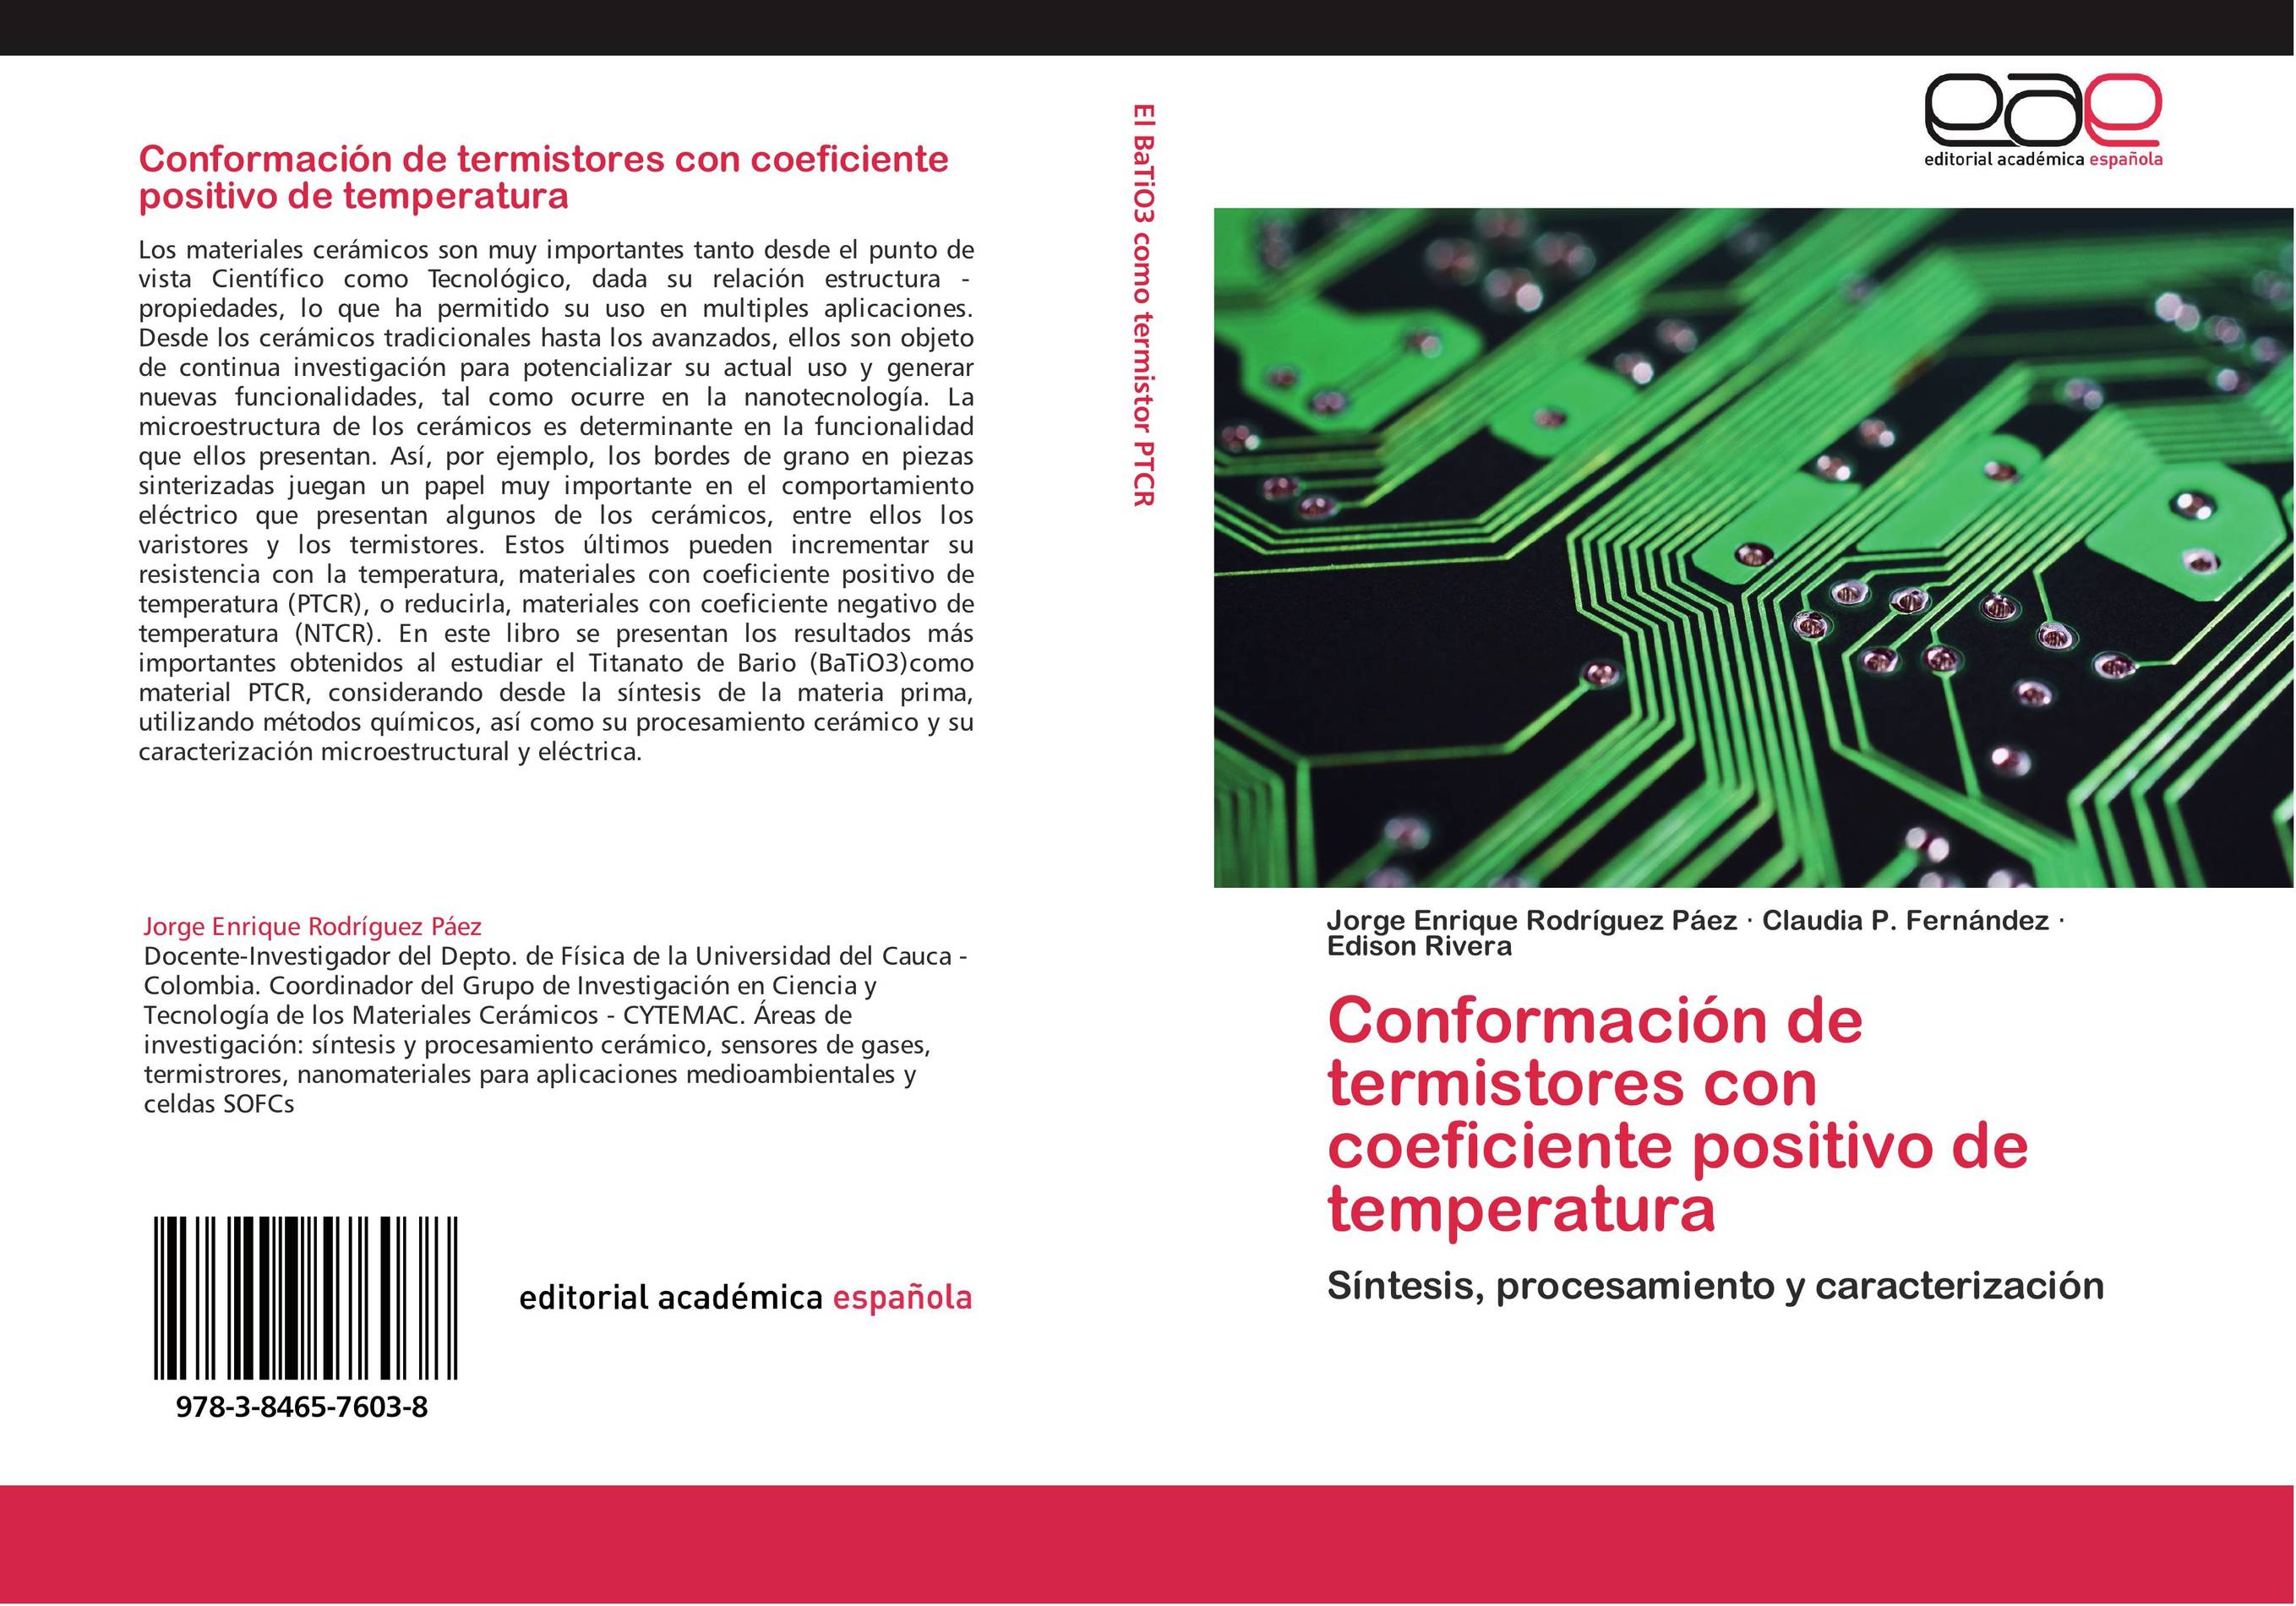 Conformación de termistores con coeficiente positivo de temperatura